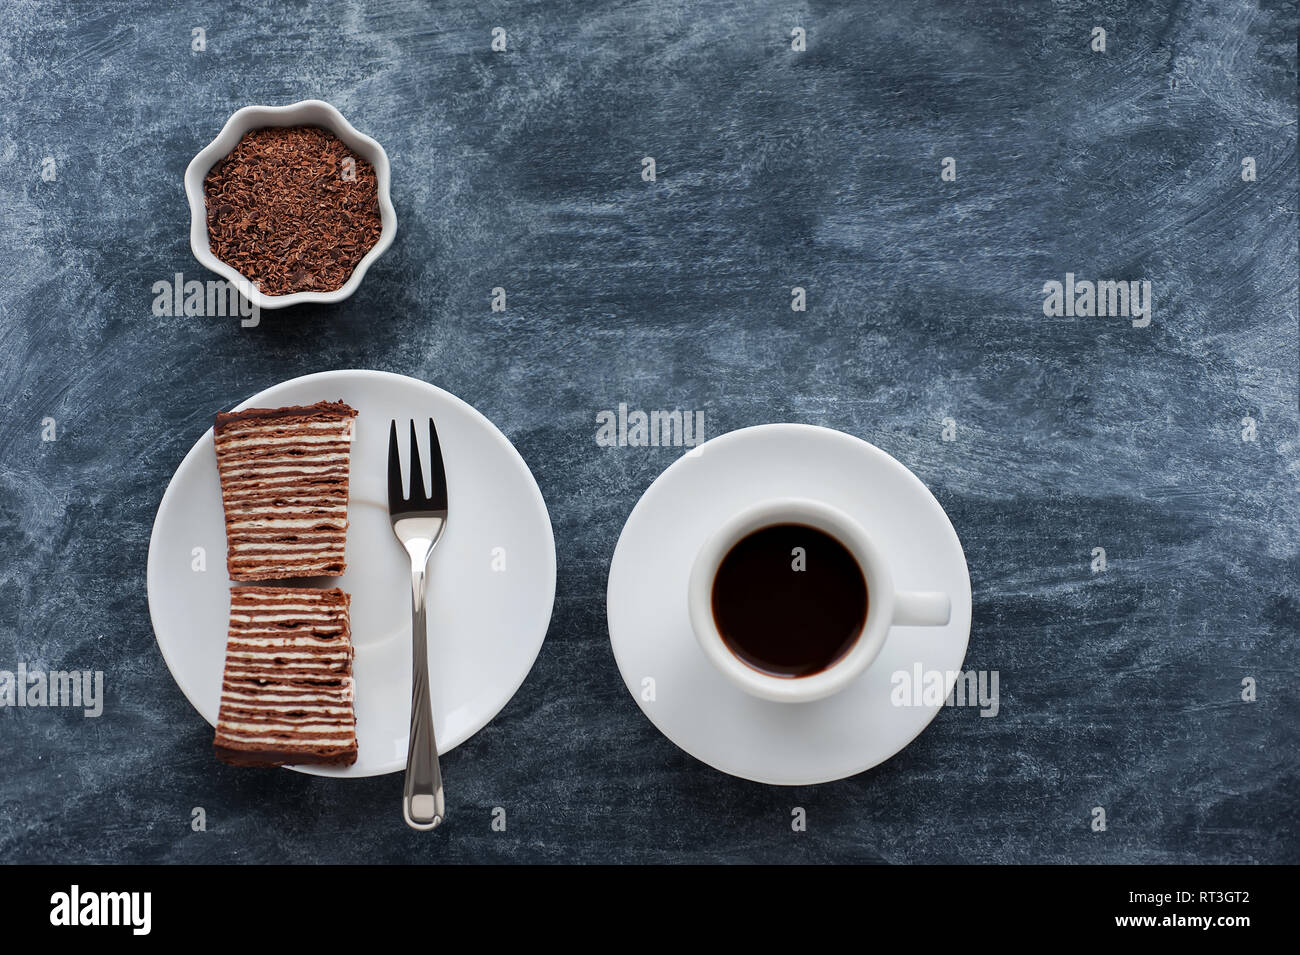 Mise en page créative faite de miettes de chocolat , cup avec café et gâteau au chocolat sucré sur fond gris. Mise à plat. Concept alimentaire. Banque D'Images